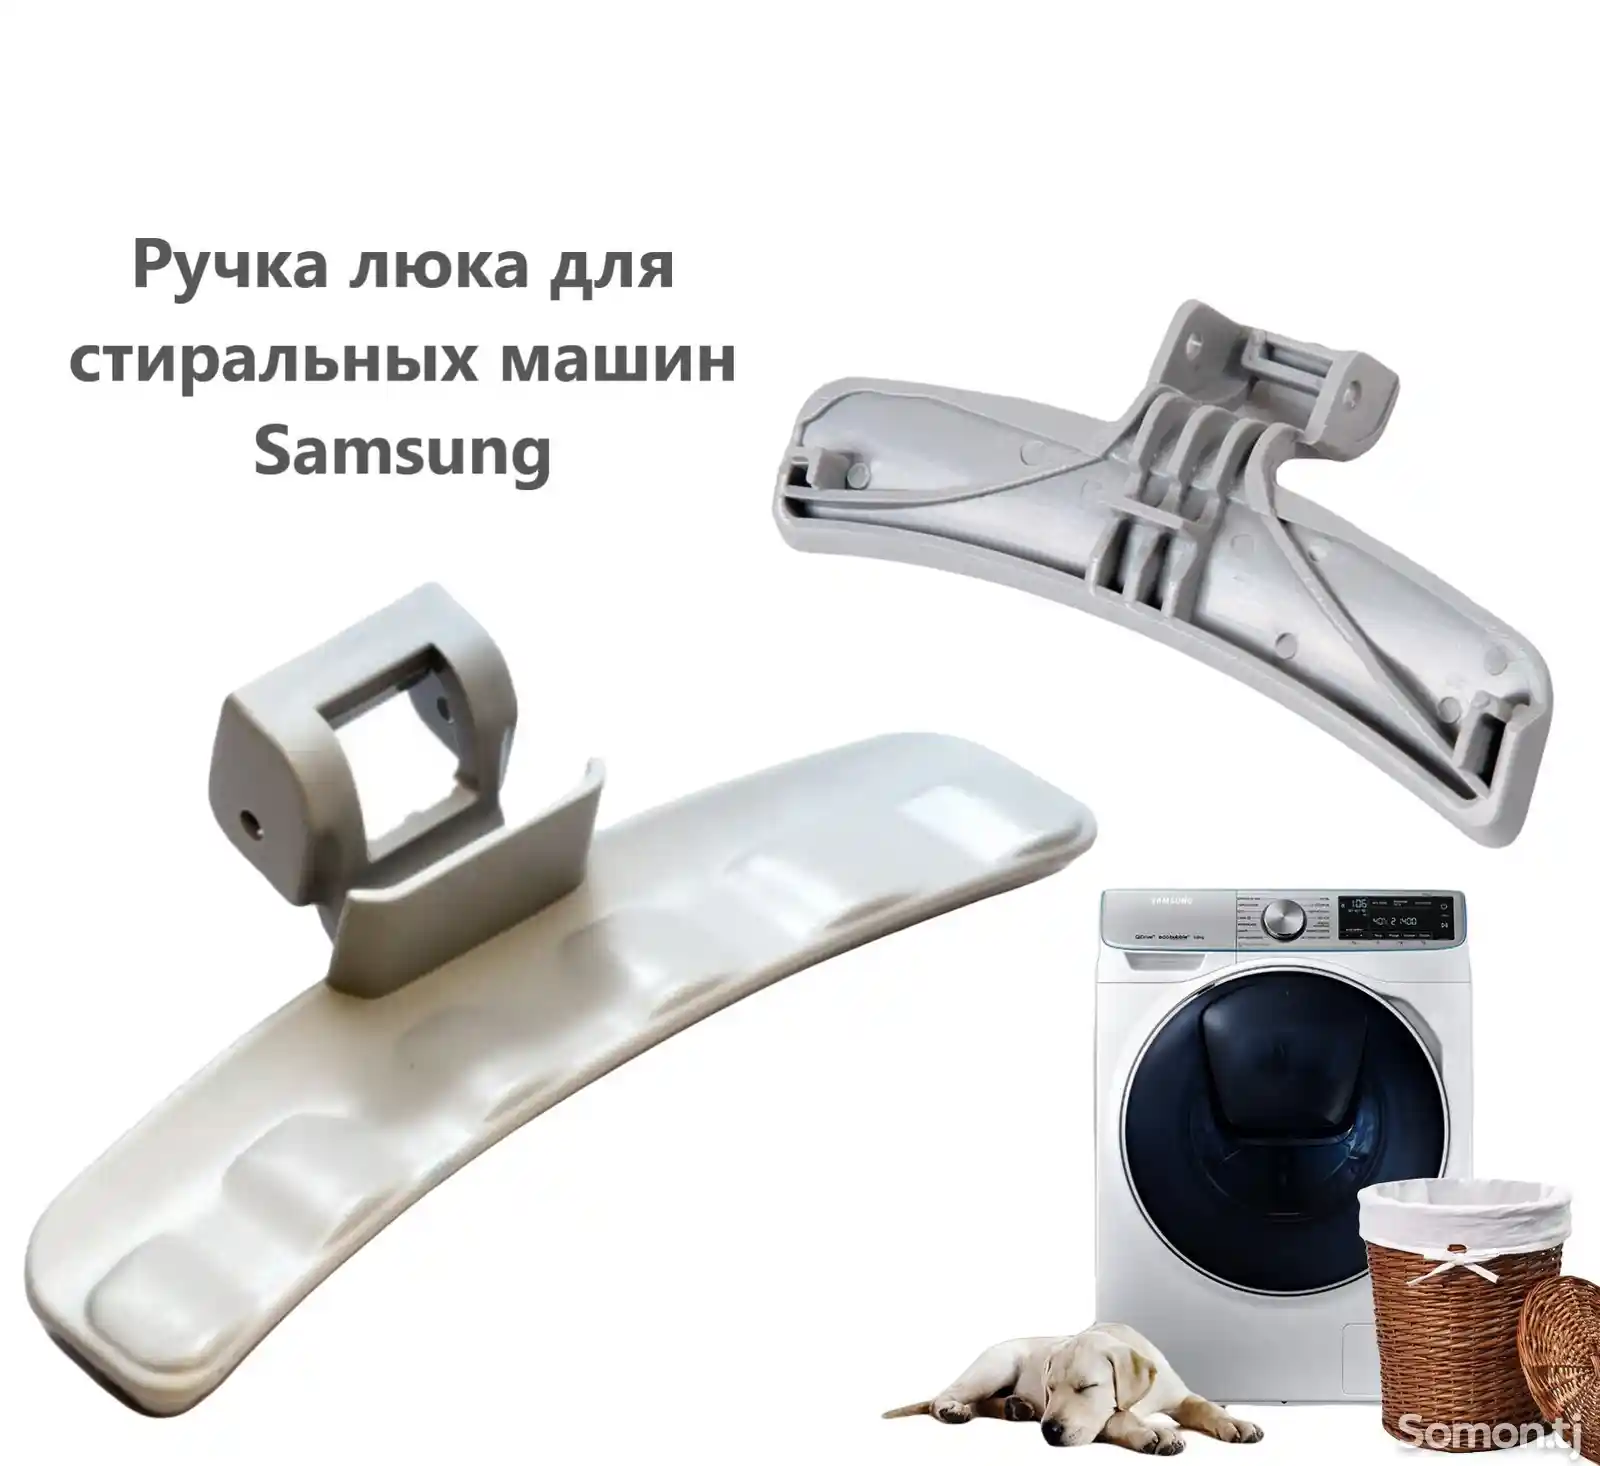 Ручки люка для стиральной машины Samsung-1